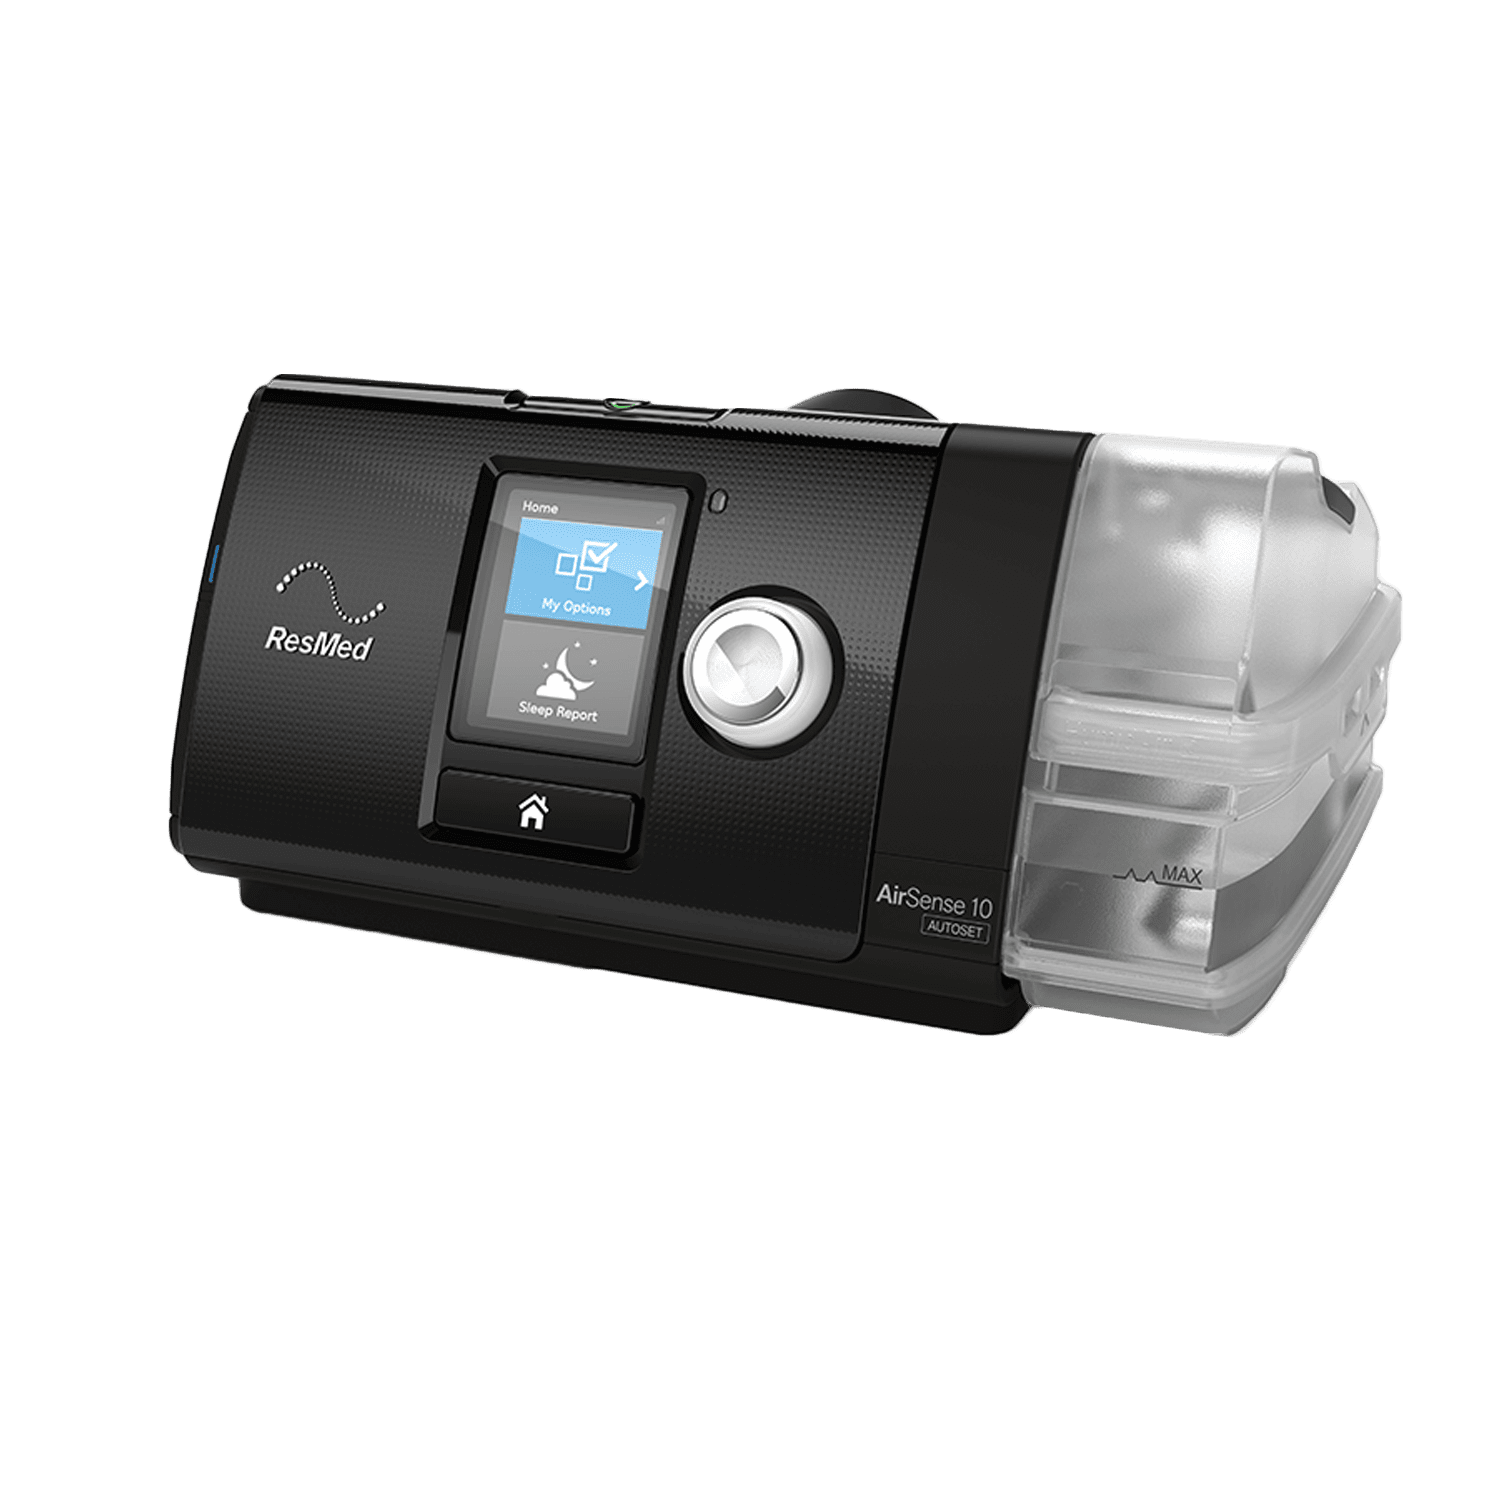 家用呼吸机推荐:瑞思迈s10全自动睡眠呼吸机